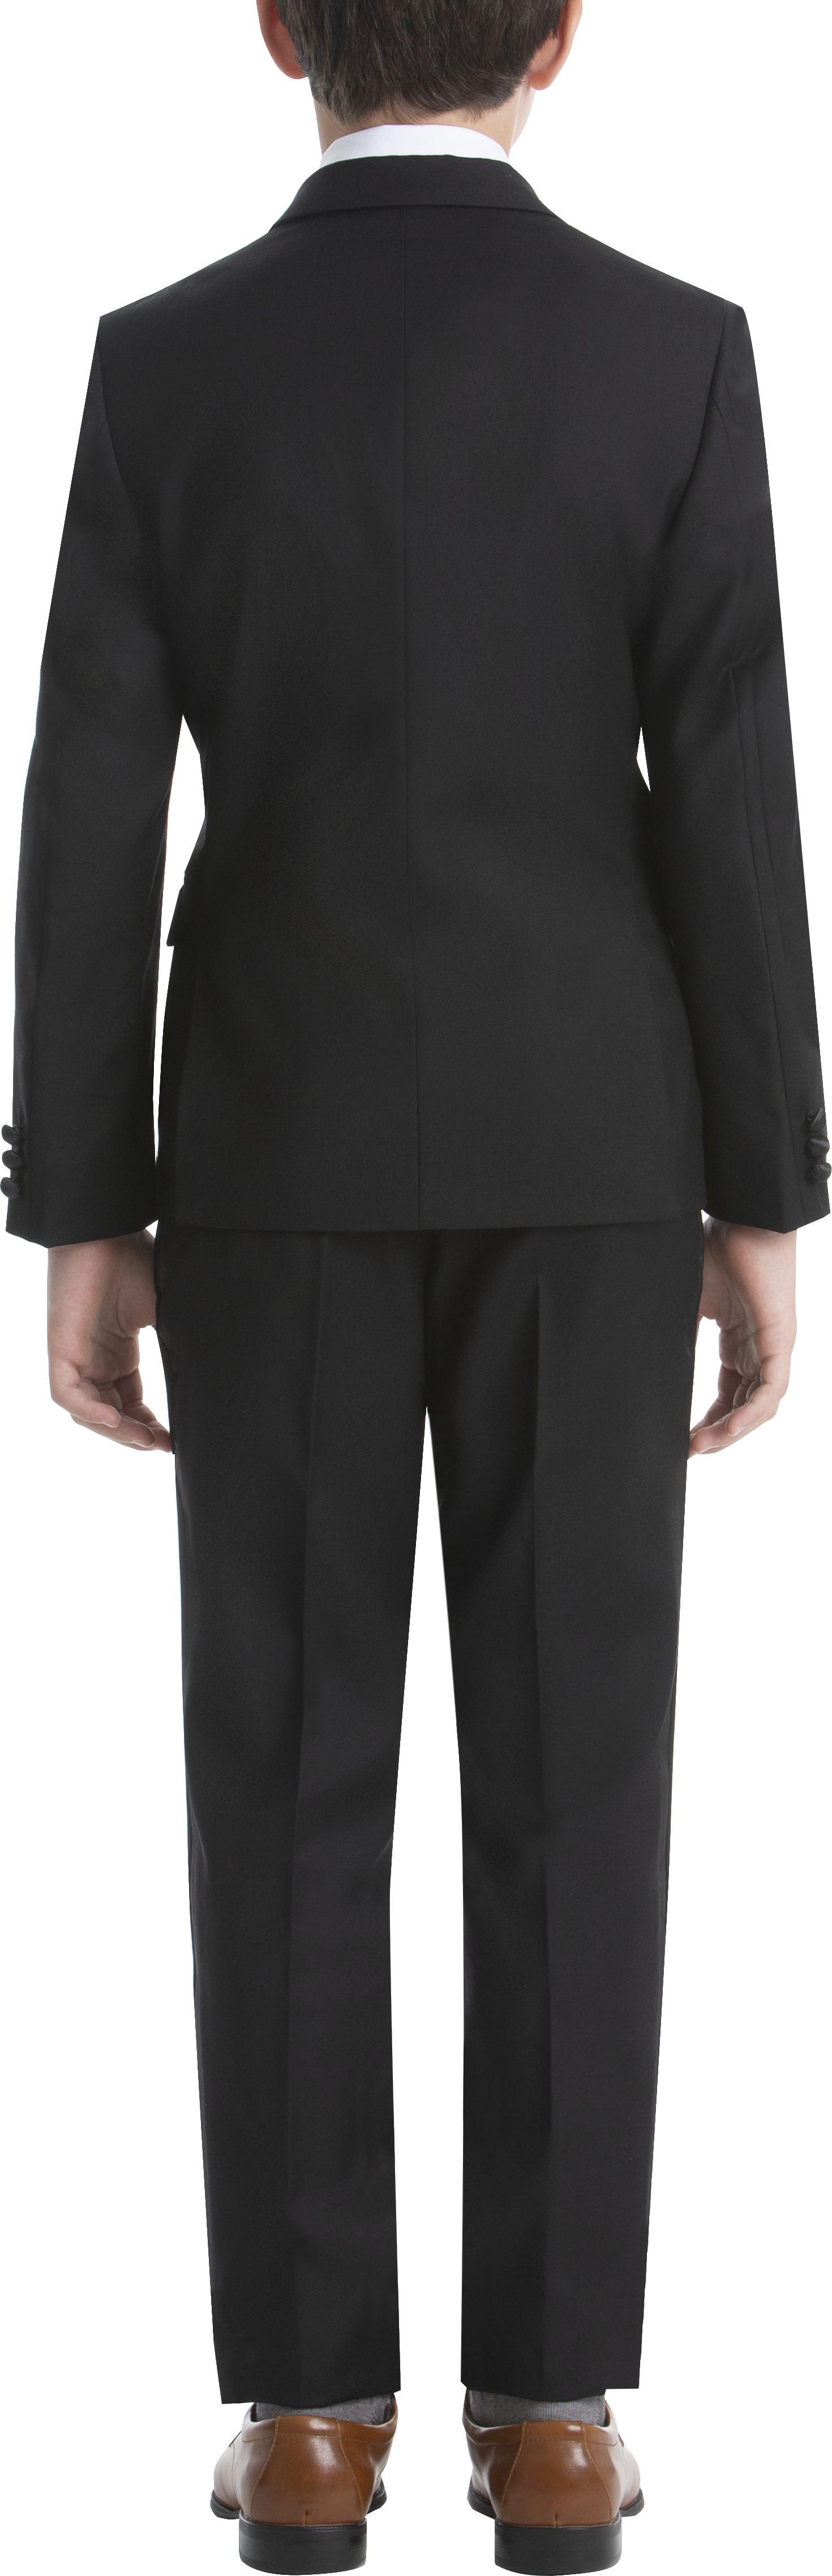 Boys (Sizes -) Suit Separates Tuxedo Jacket